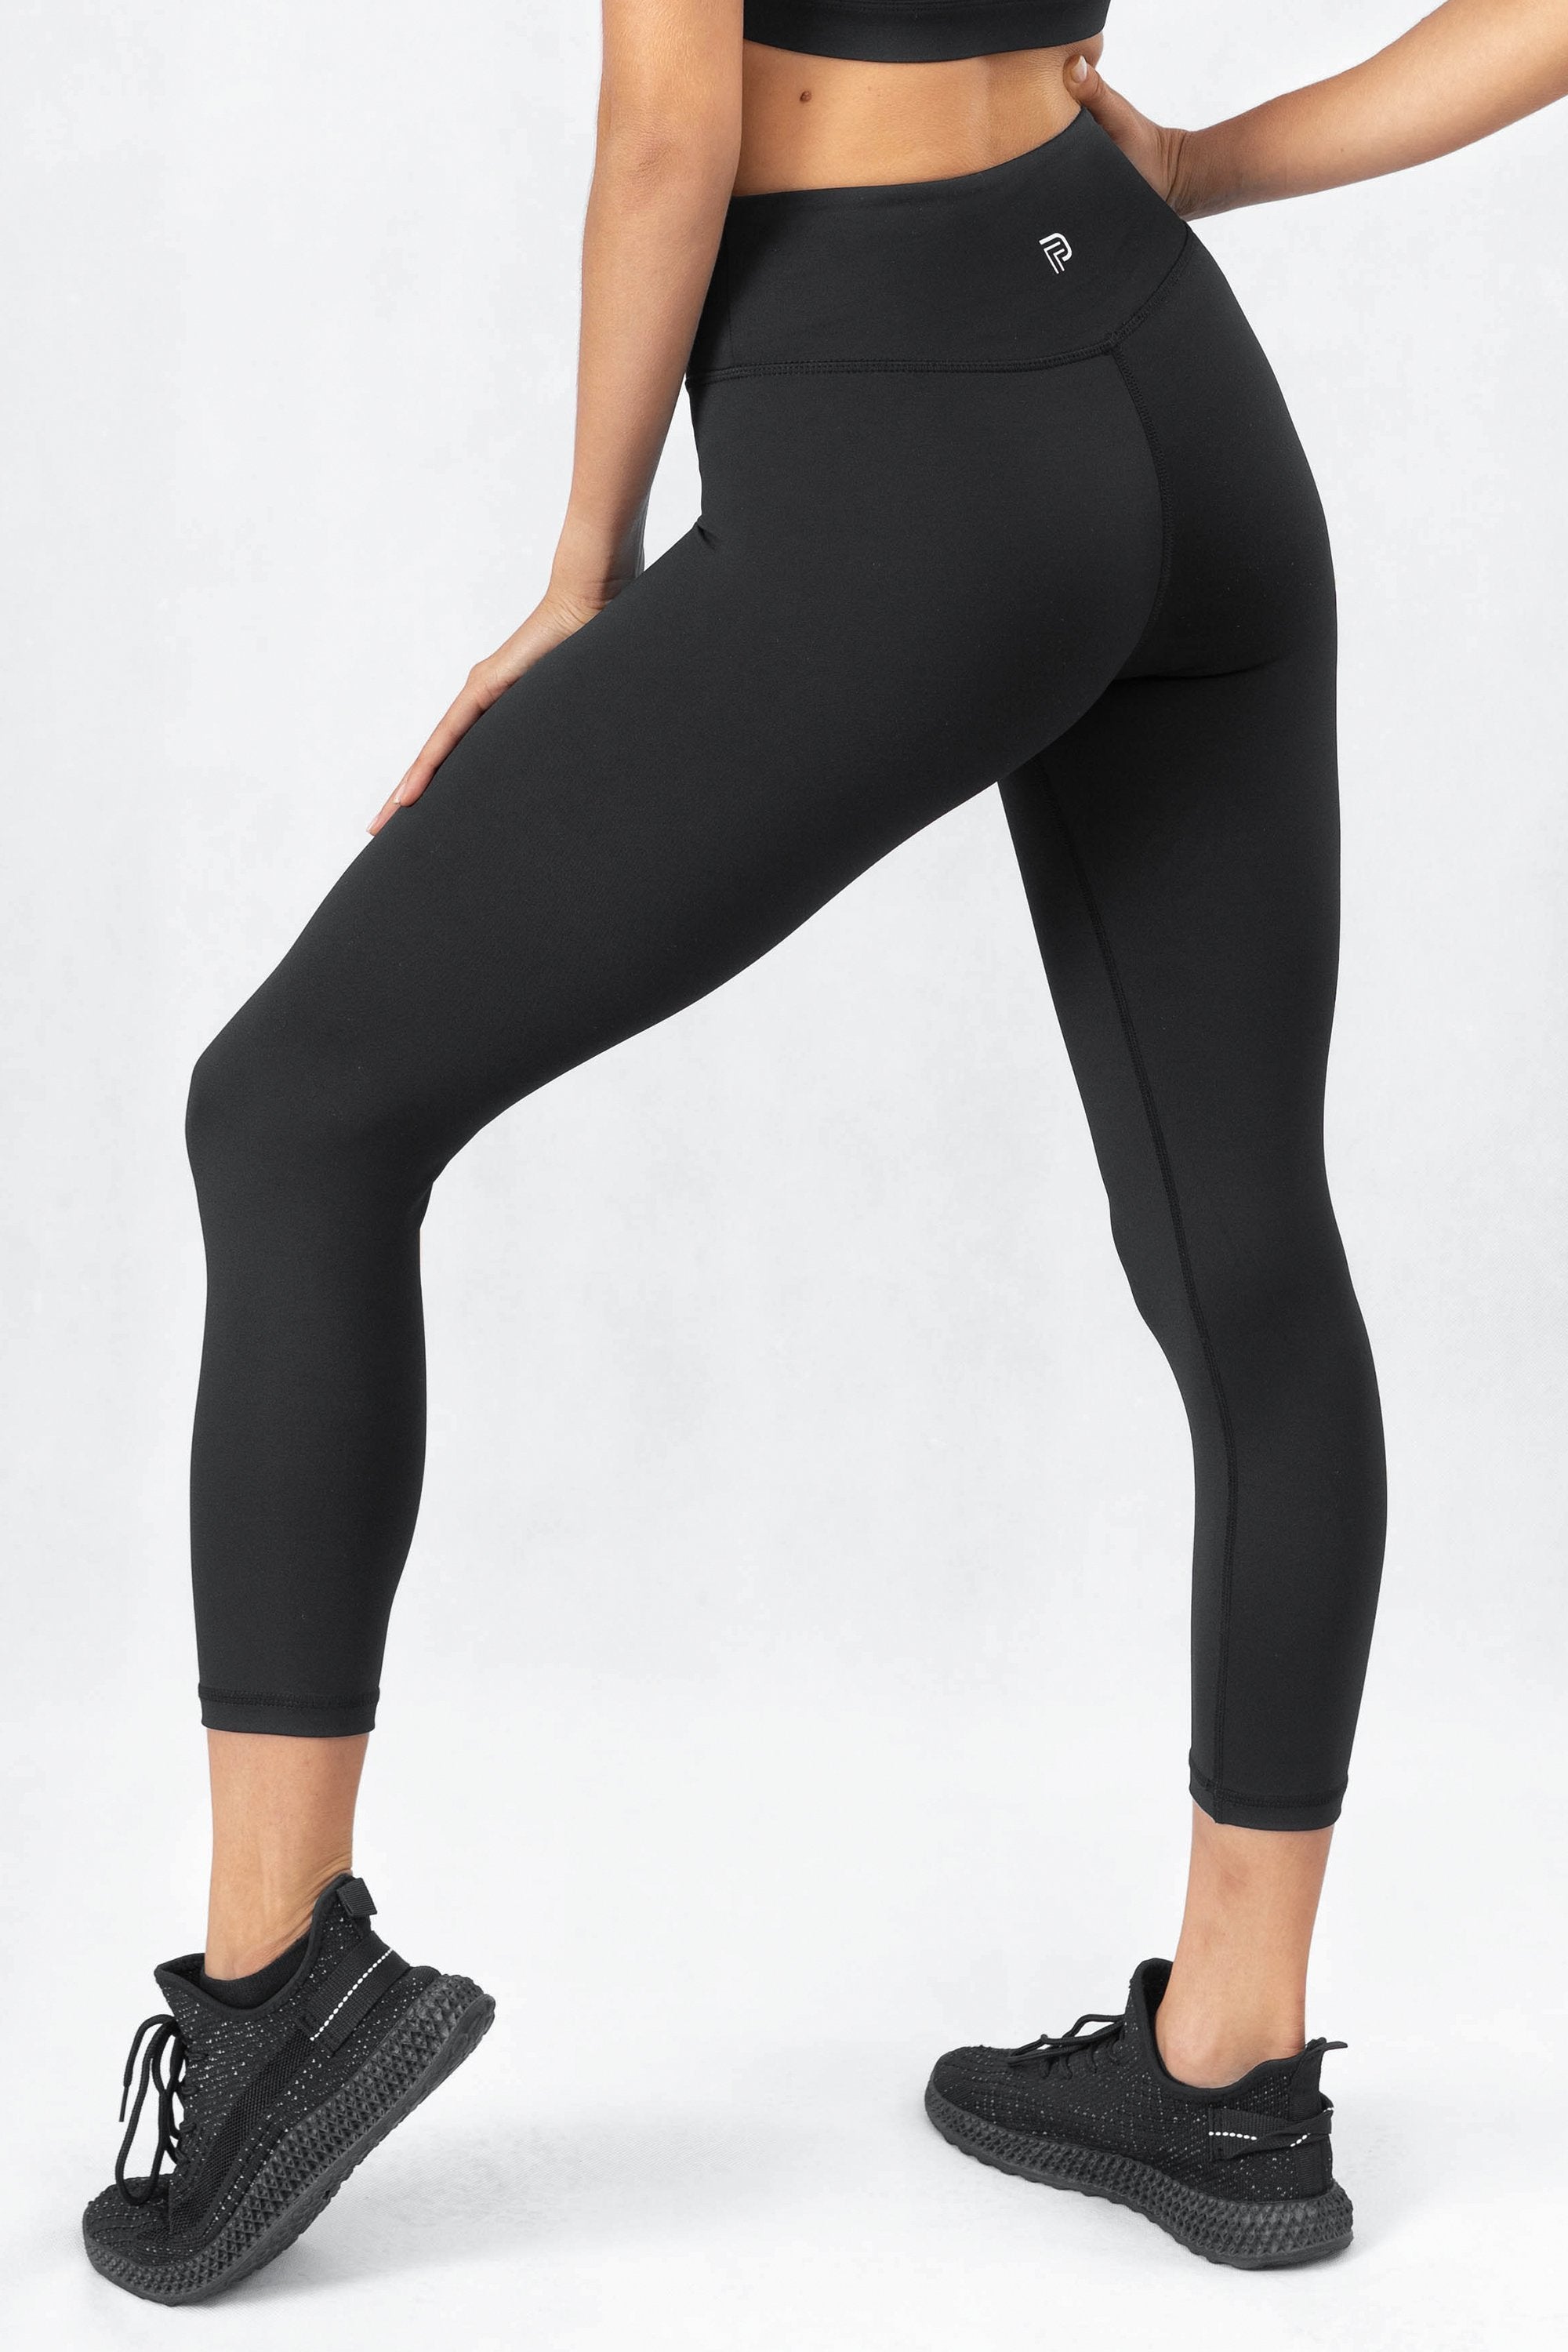 Buy Women Polyester 7/8 High-Waist Shaping Gym Leggings - Black Online